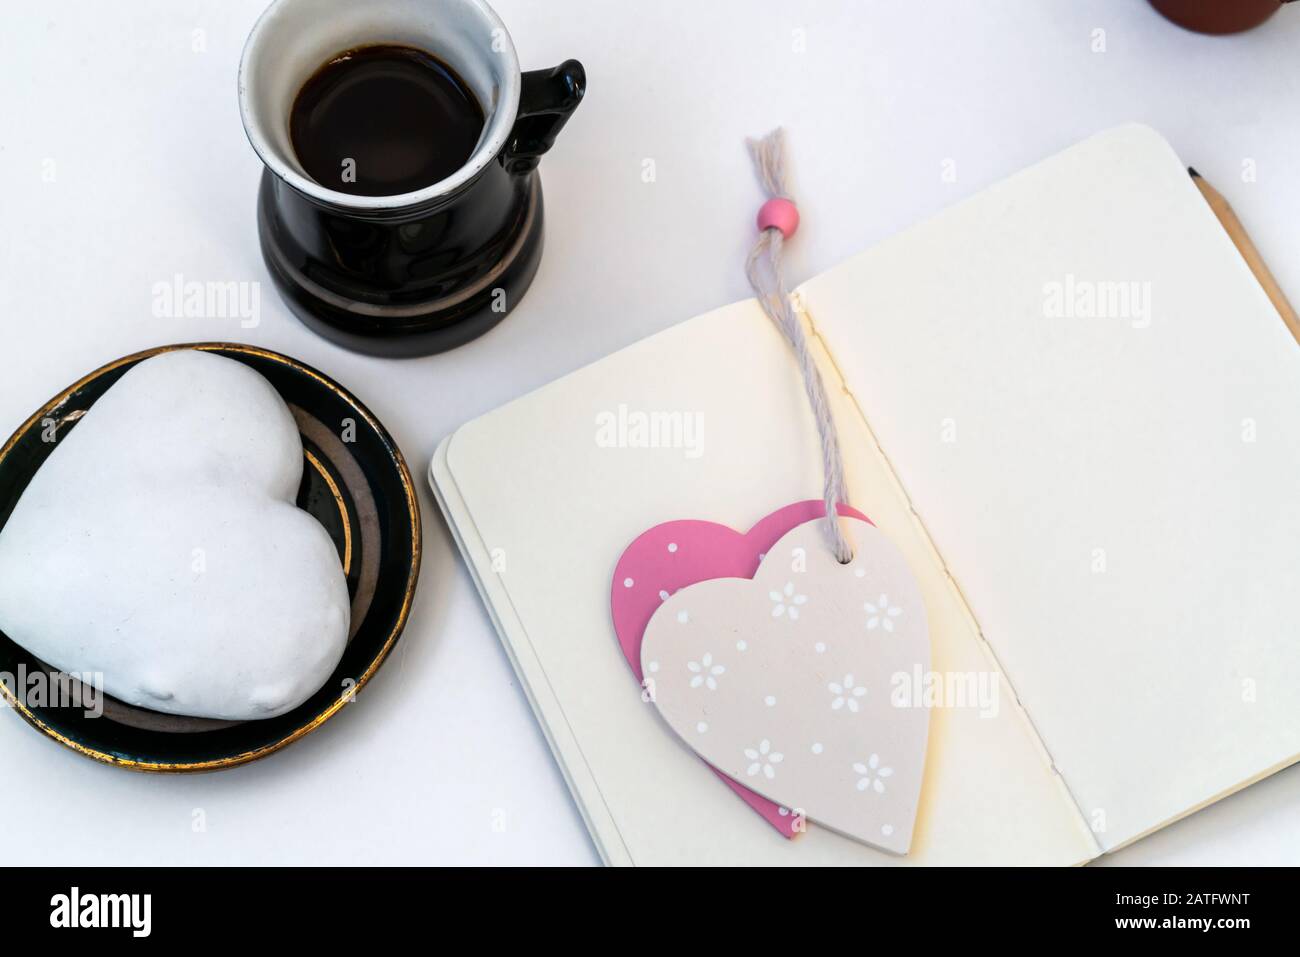 Composición del día de San Valentín. Escritorio femenino con taza de café y plato con galleta de jengibre en forma de corazón sobre fondo blanco. Concepto de celebración del día de San Valentín Foto de stock